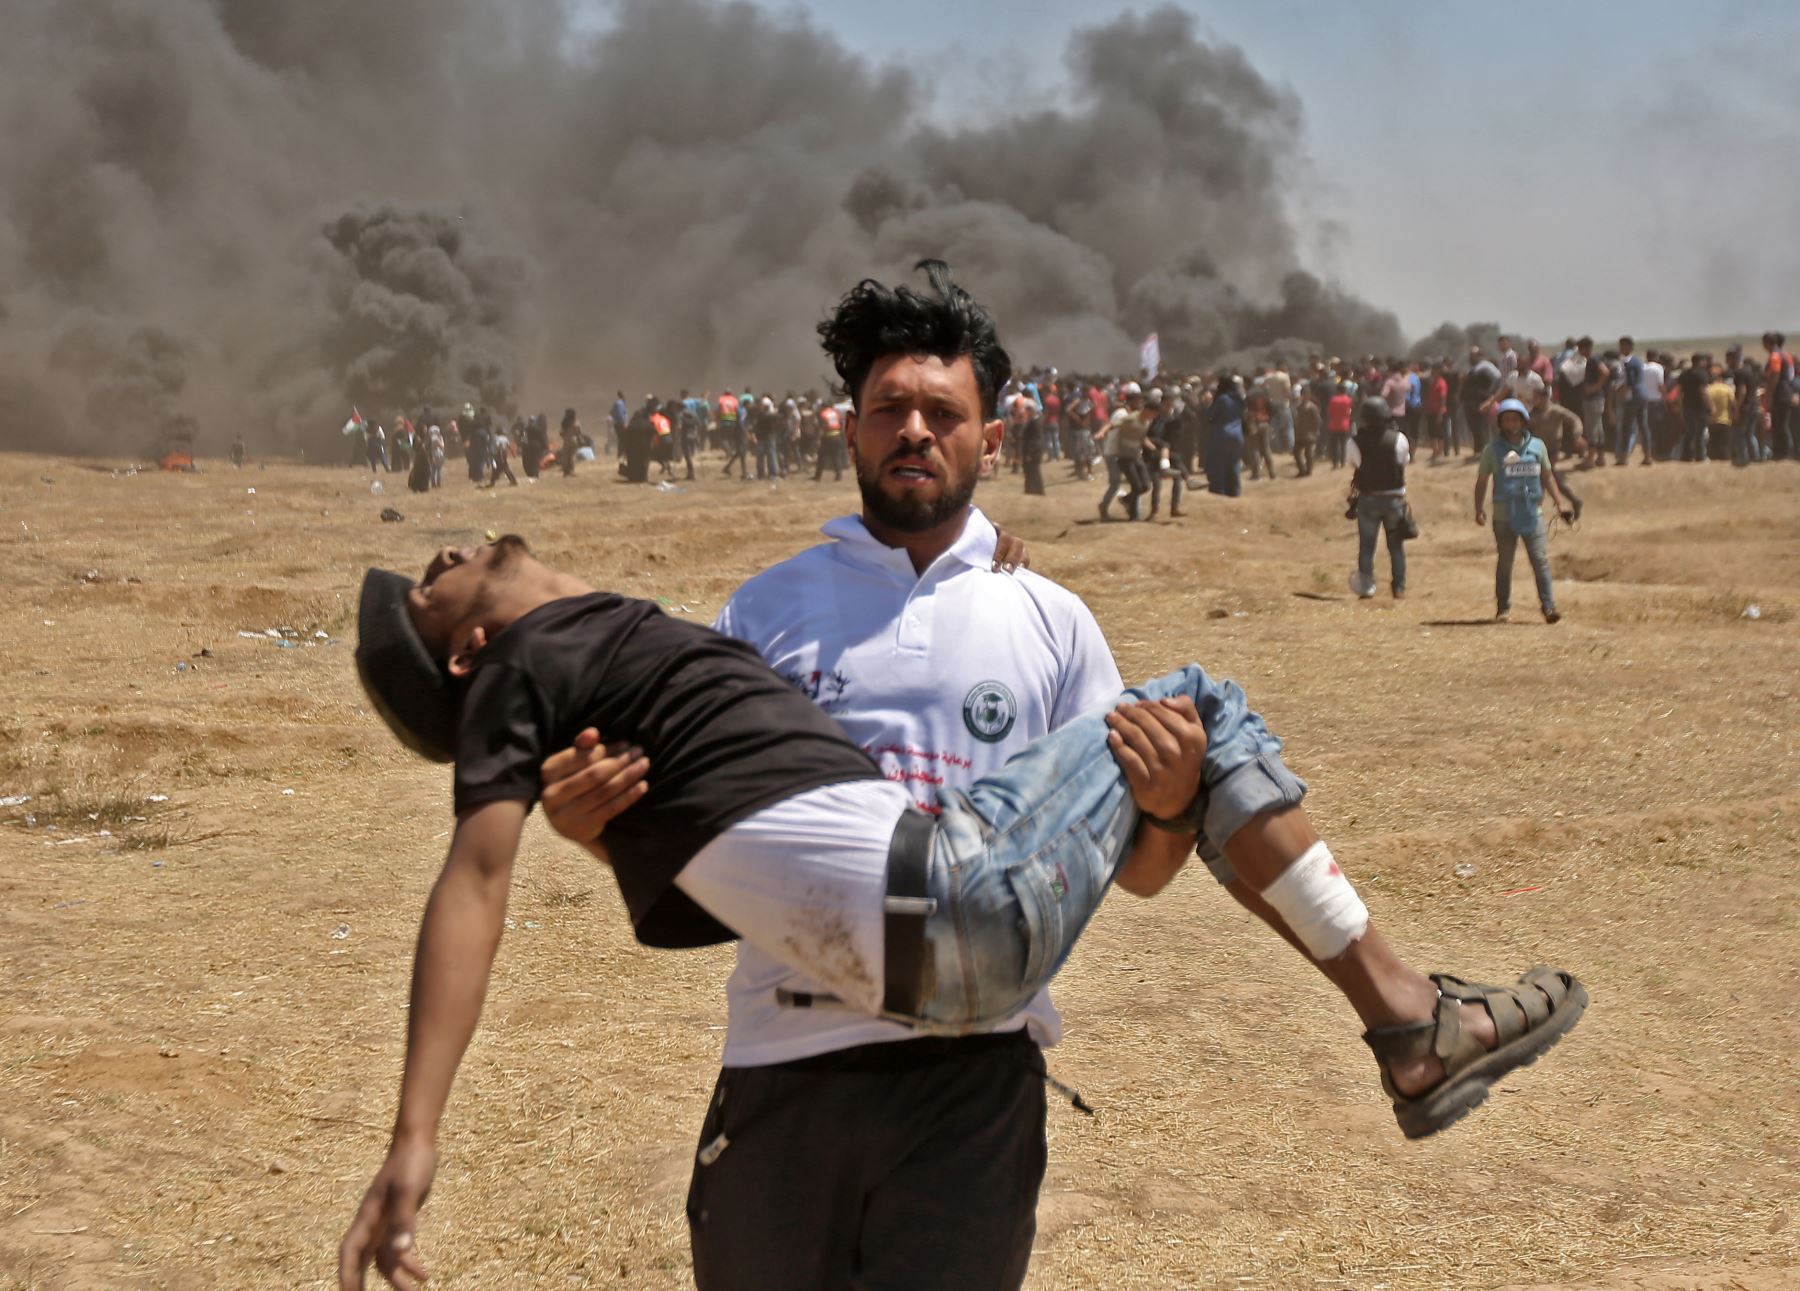 Un palestino carga a un manifestante herido durante los enfrentamientos con las fuerzas israelíes cerca de la frontera entre la franja de Gaza e Israel. AFP